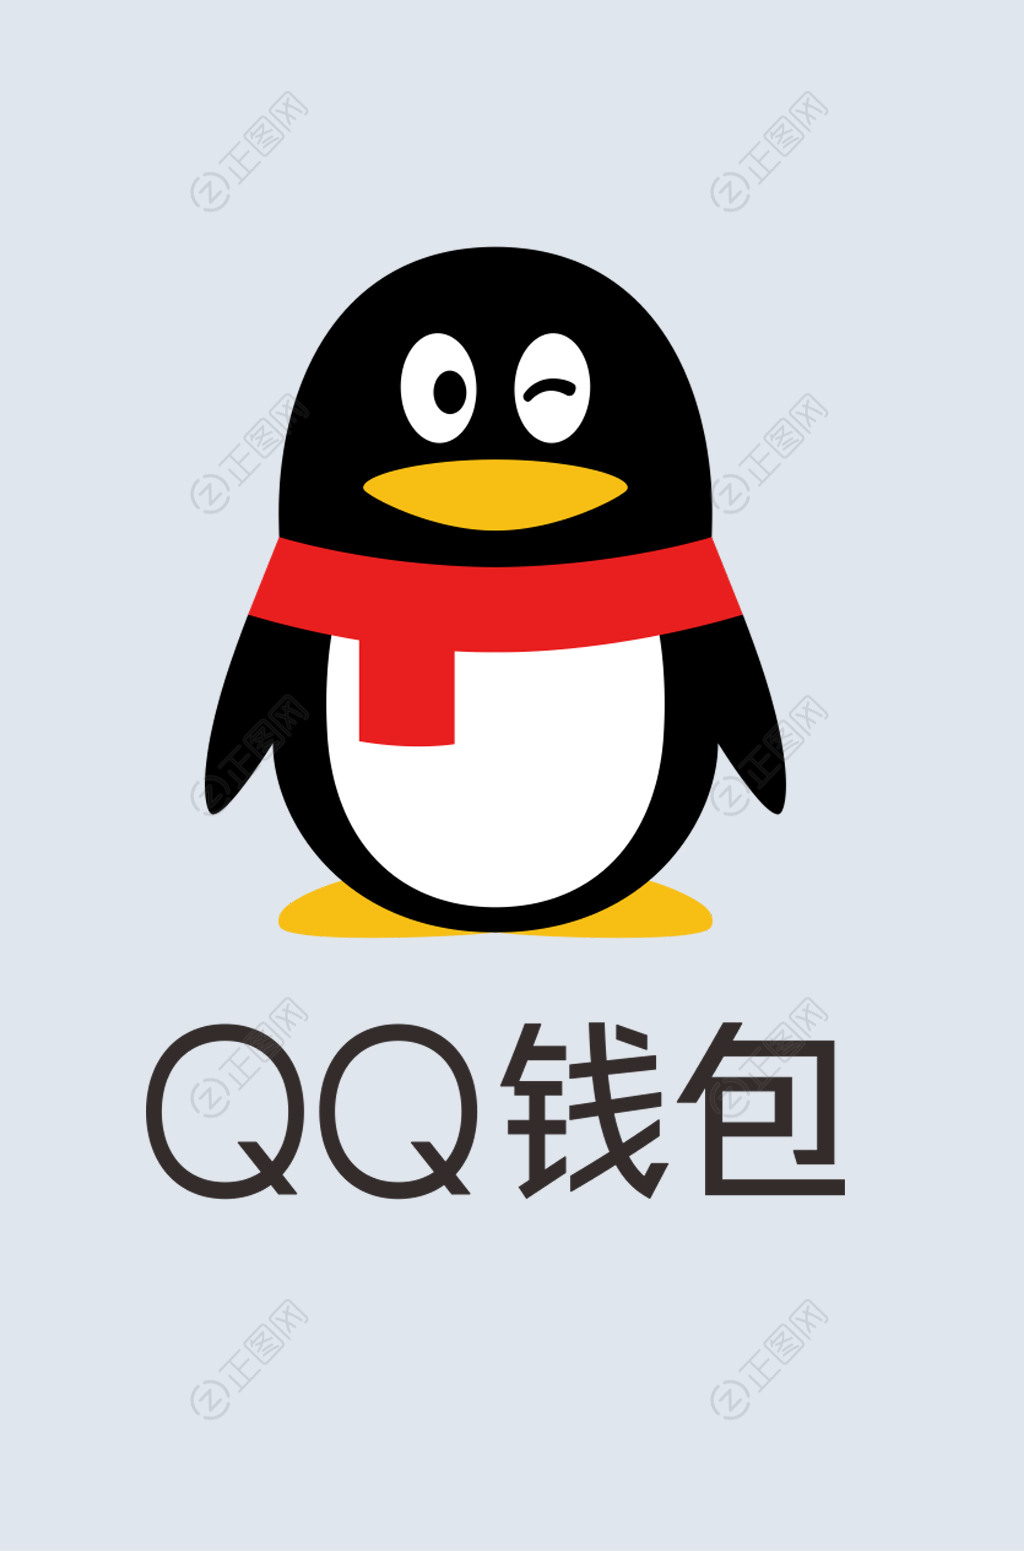 最新版QQ钱包如何签到 - 早若网